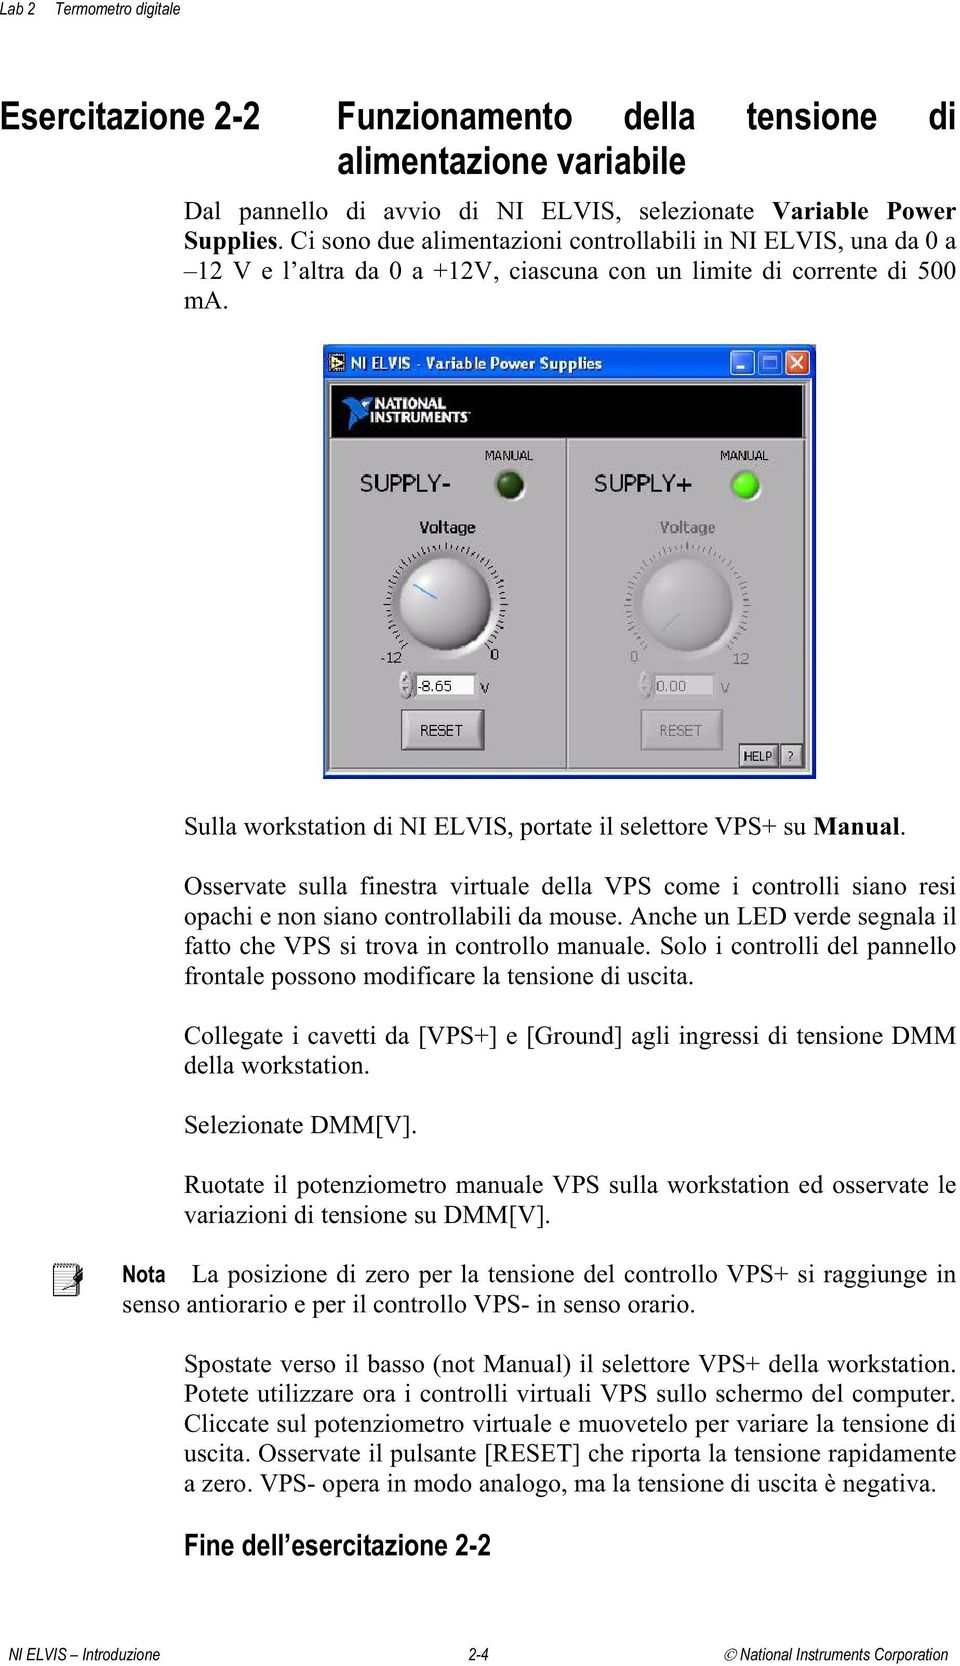 Sulla workstation di NI ELVIS, portate il selettore VPS+ su Manual. Osservate sulla finestra virtuale della VPS come i controlli siano resi opachi e non siano controllabili da mouse.